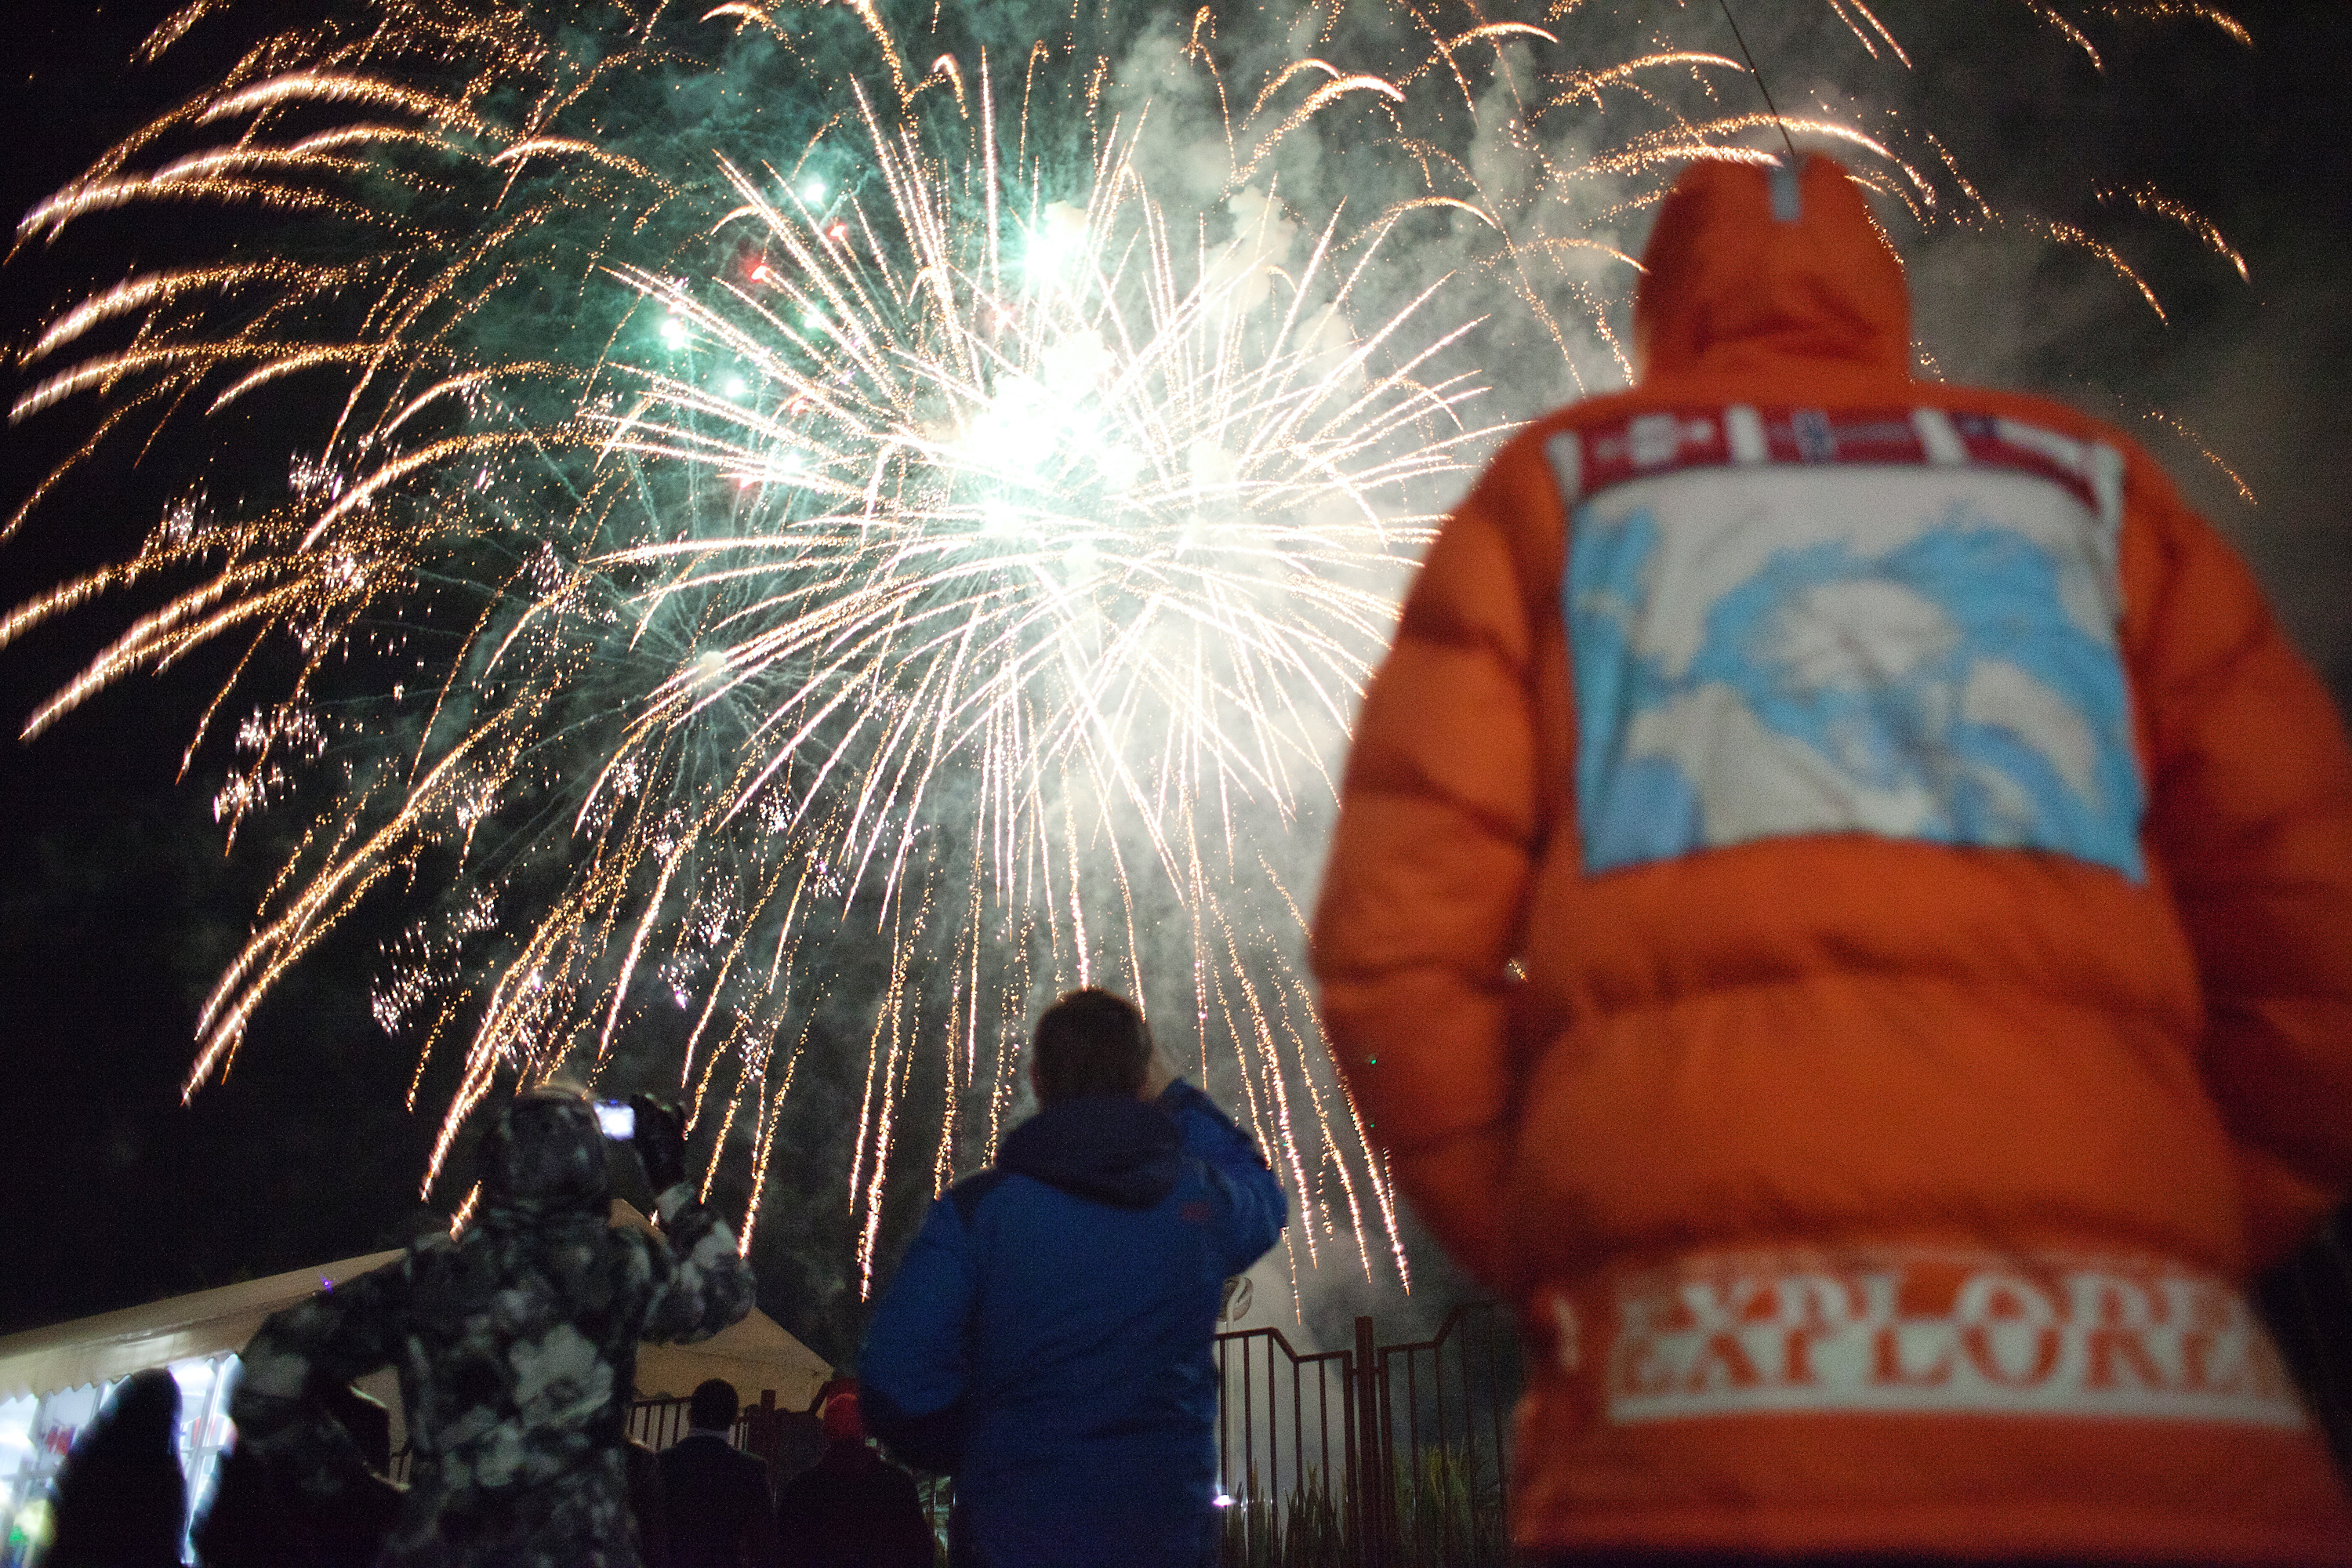 At the end of the closing ceremony of the Sochi Olympics, epic fireworks illuminated the city skyline. // В завершении церемонии закрытия Олимпиады в Сочи был устроен грандиозный праздничный салют.